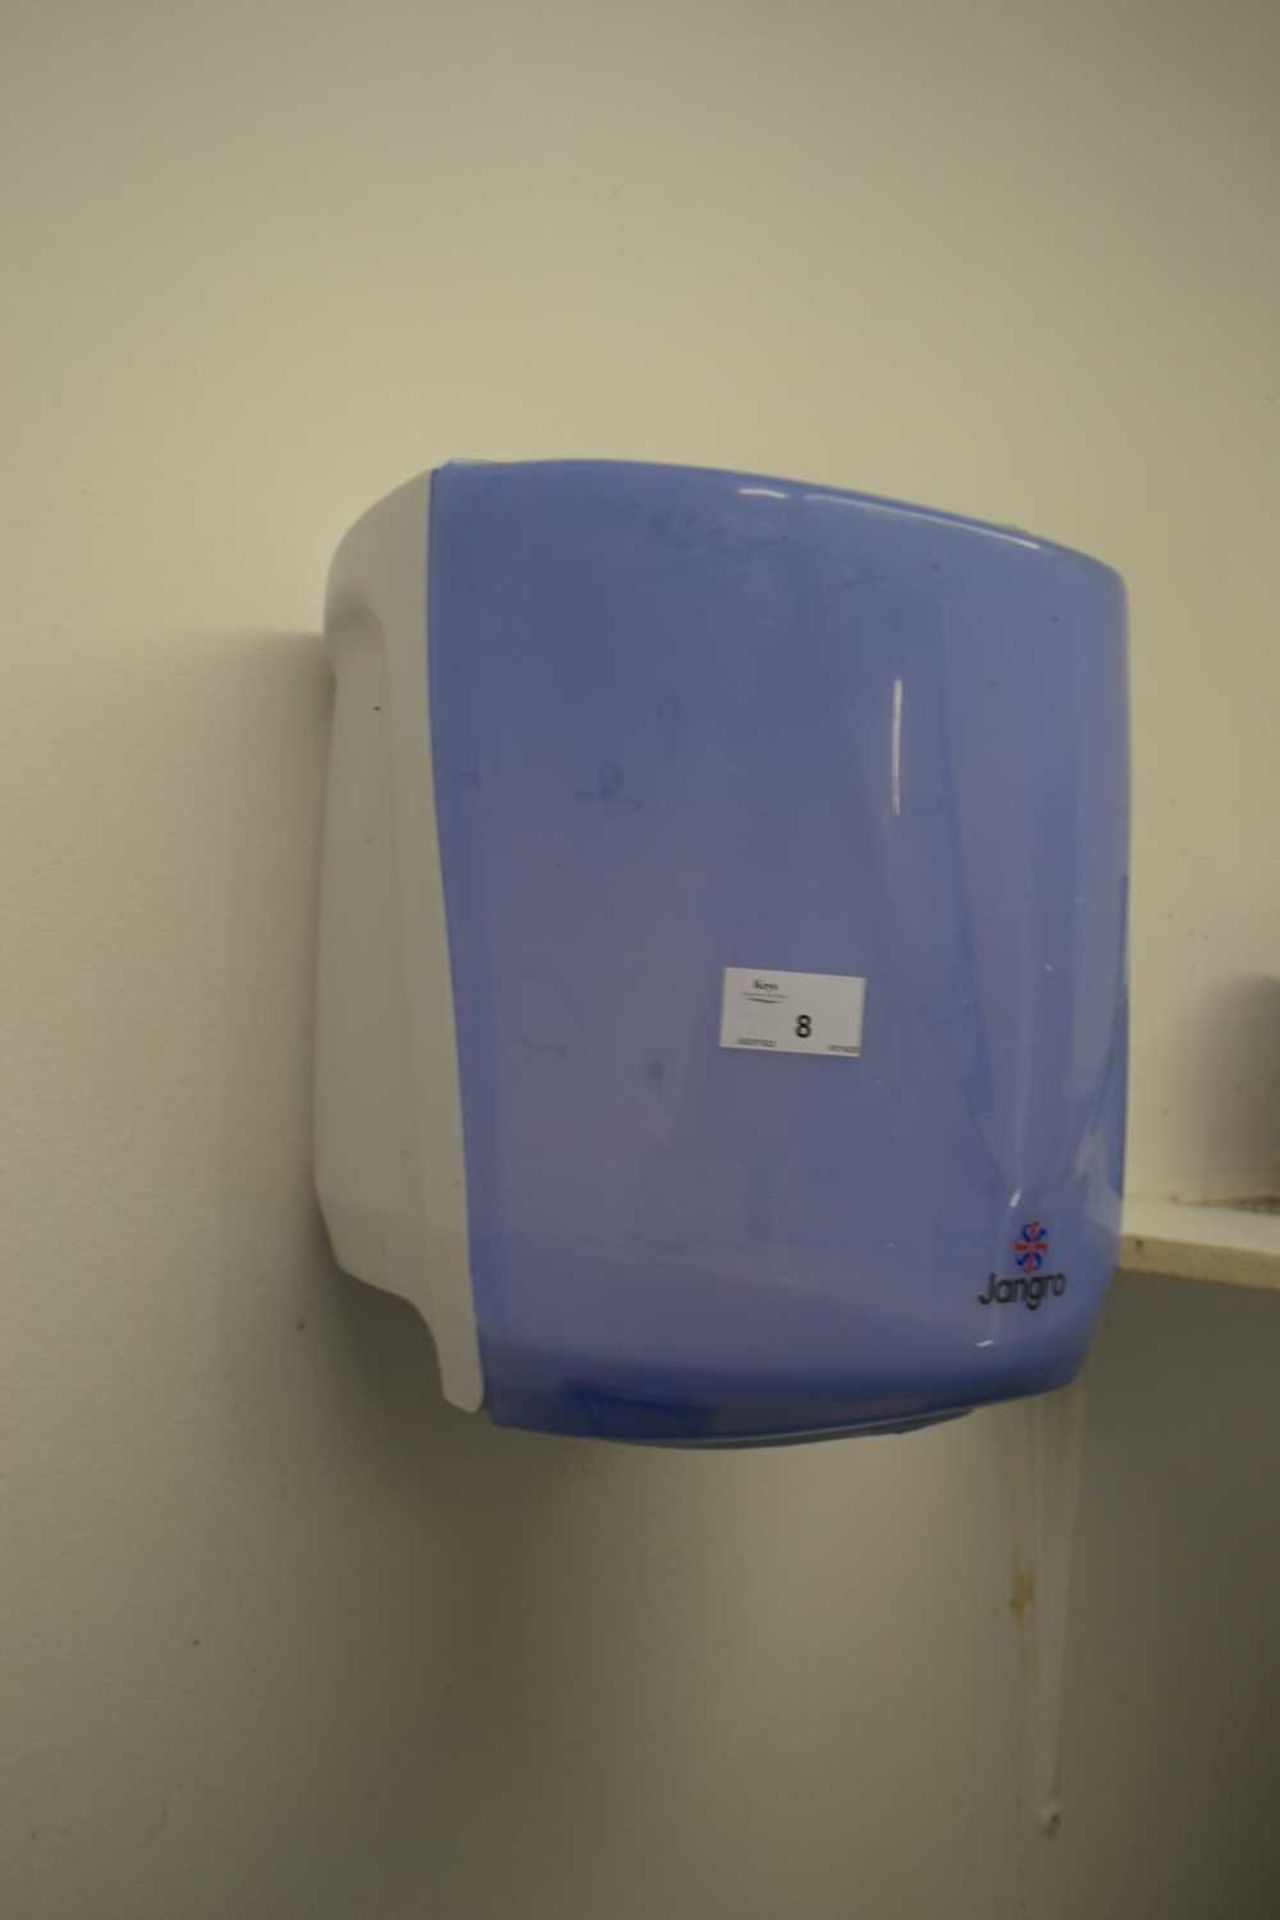 Jangro paper towel dispenser - Image 2 of 2